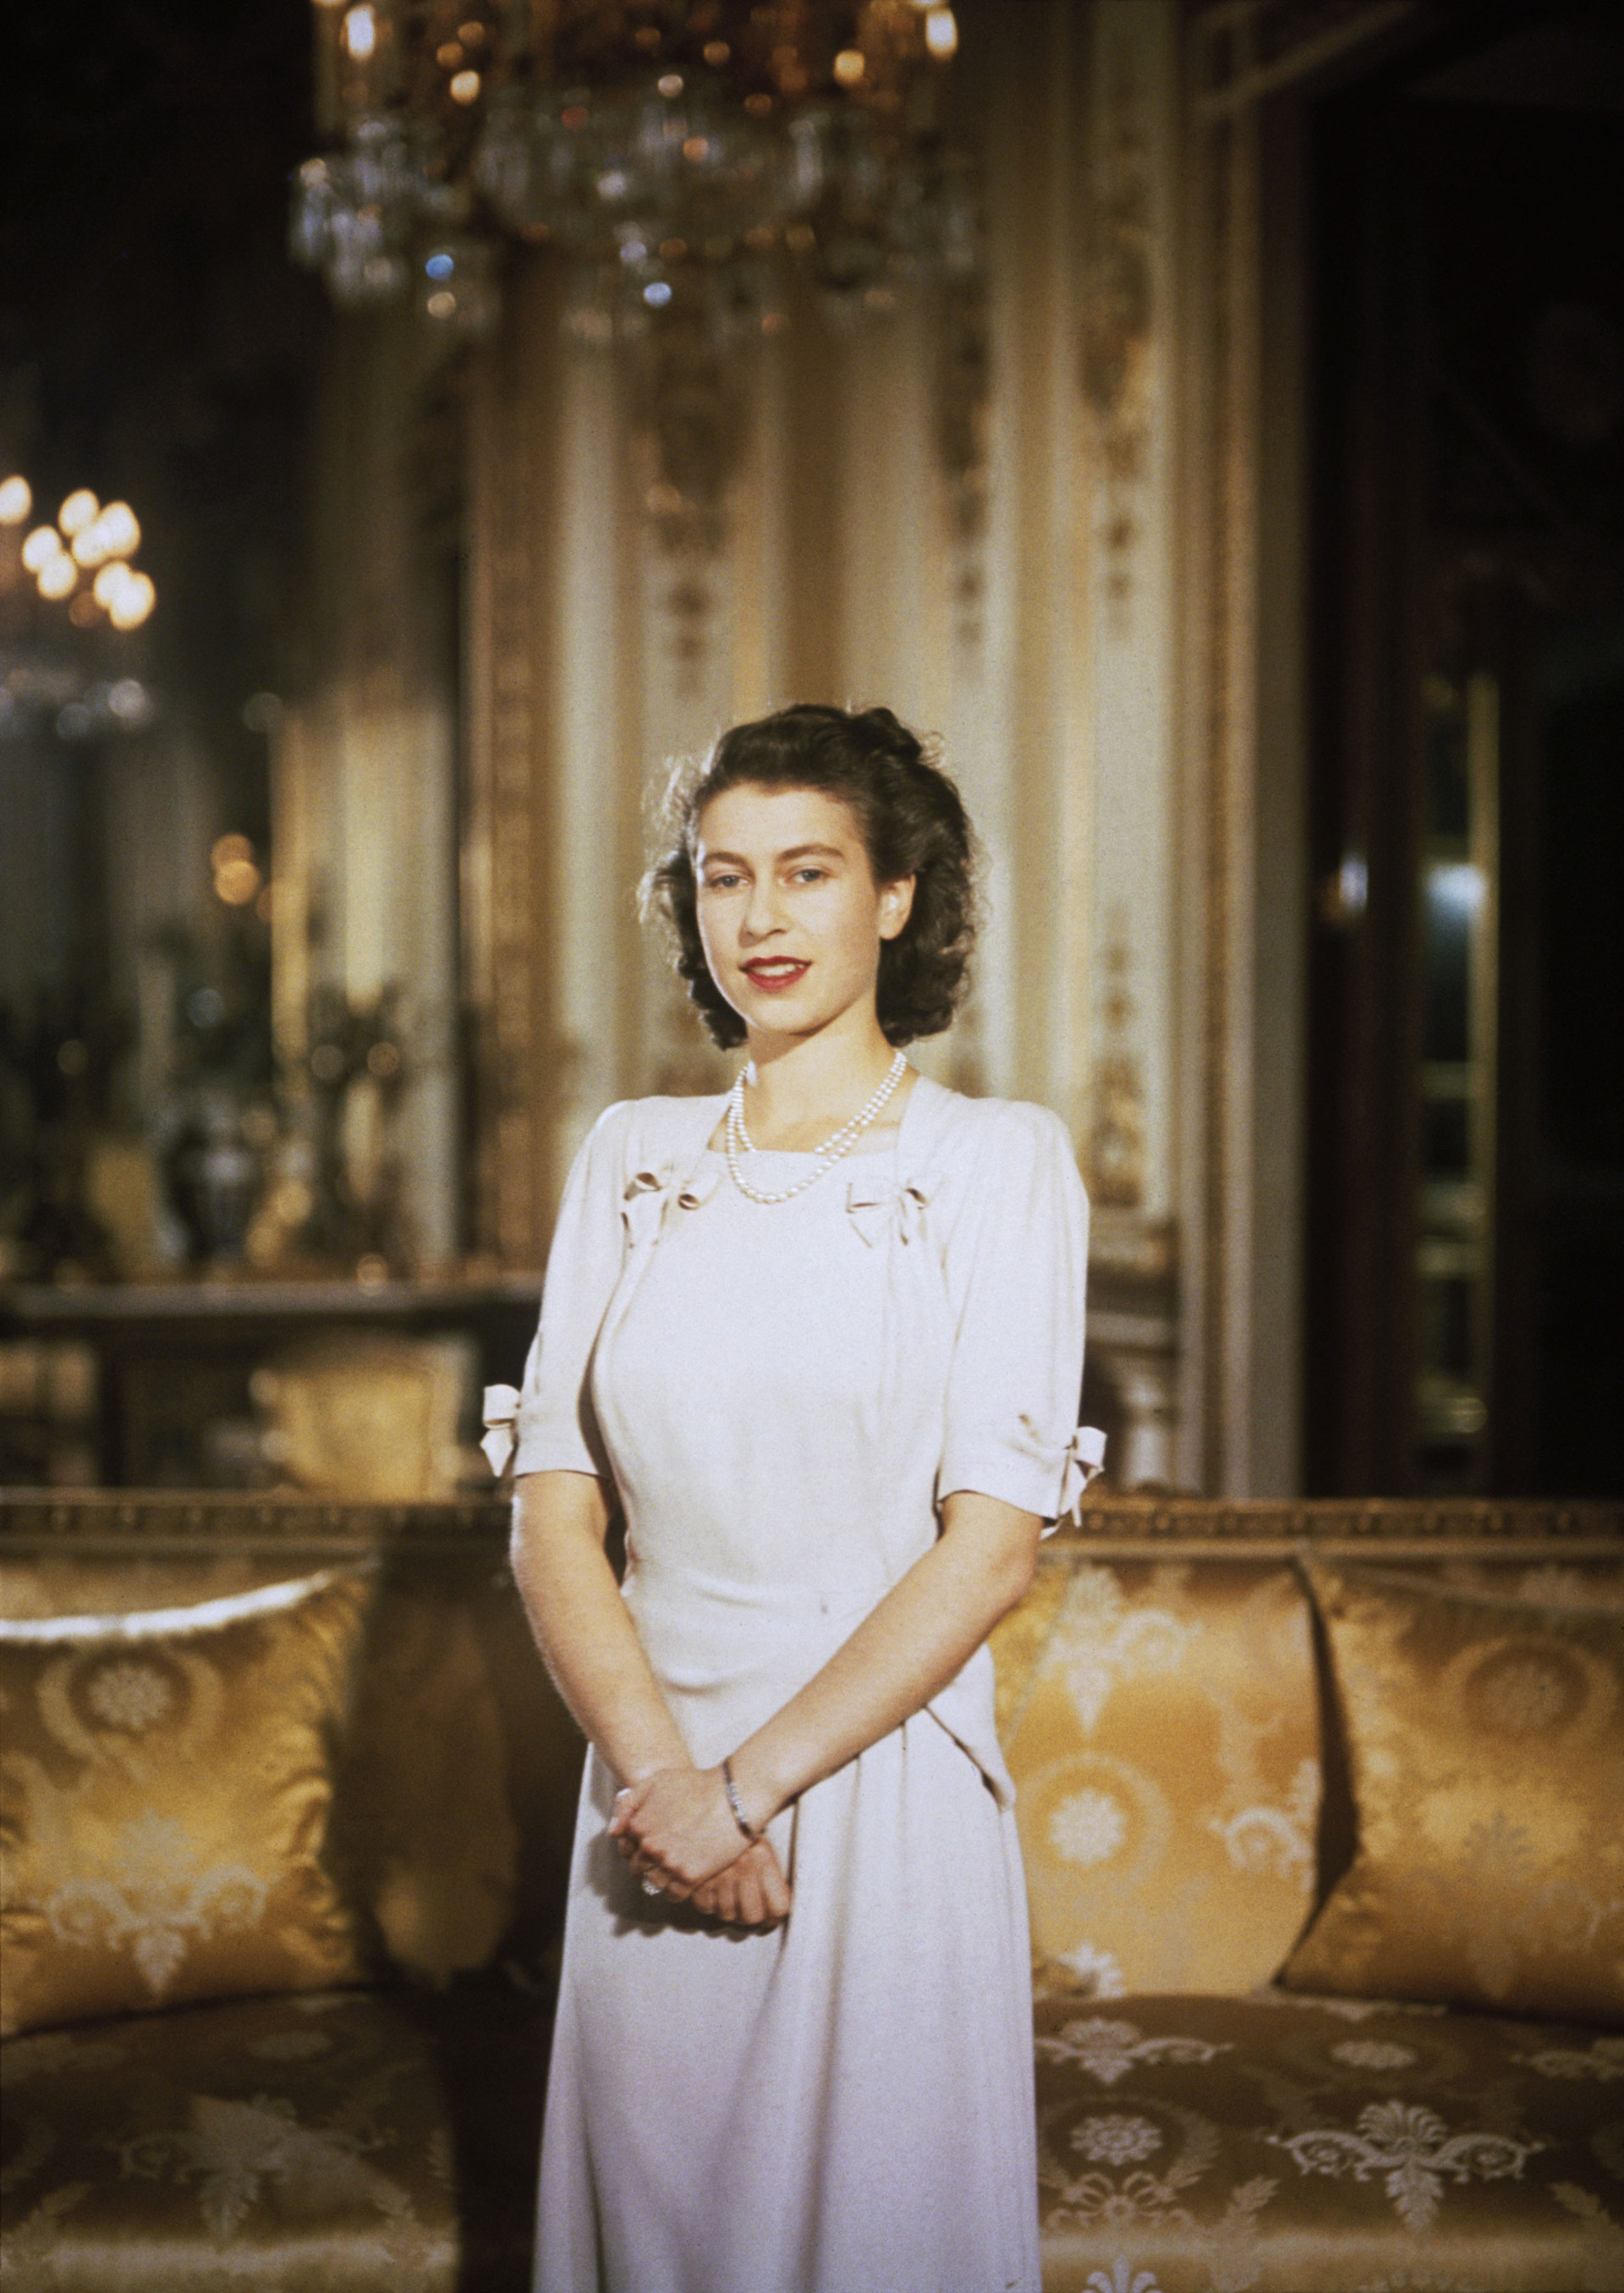 Nữ hoàng trong lễ đính hôn với Hoàng thân Philip năm 1947. Ảnh: Getty Images.